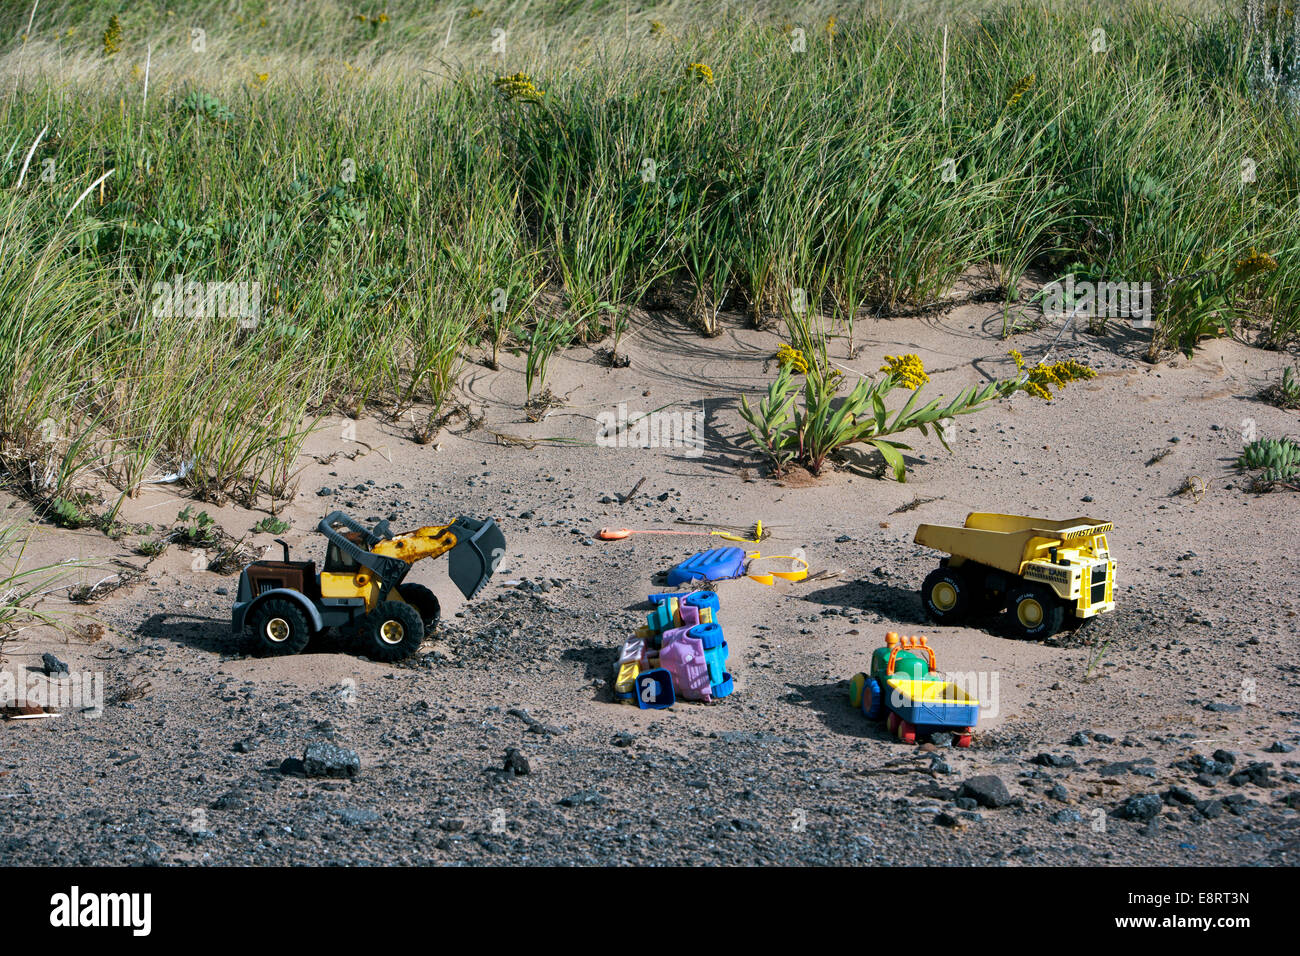 Les jouets laissés dans le sable - Covehead Harbour - New York, Prince Edward Island, Canada Banque D'Images